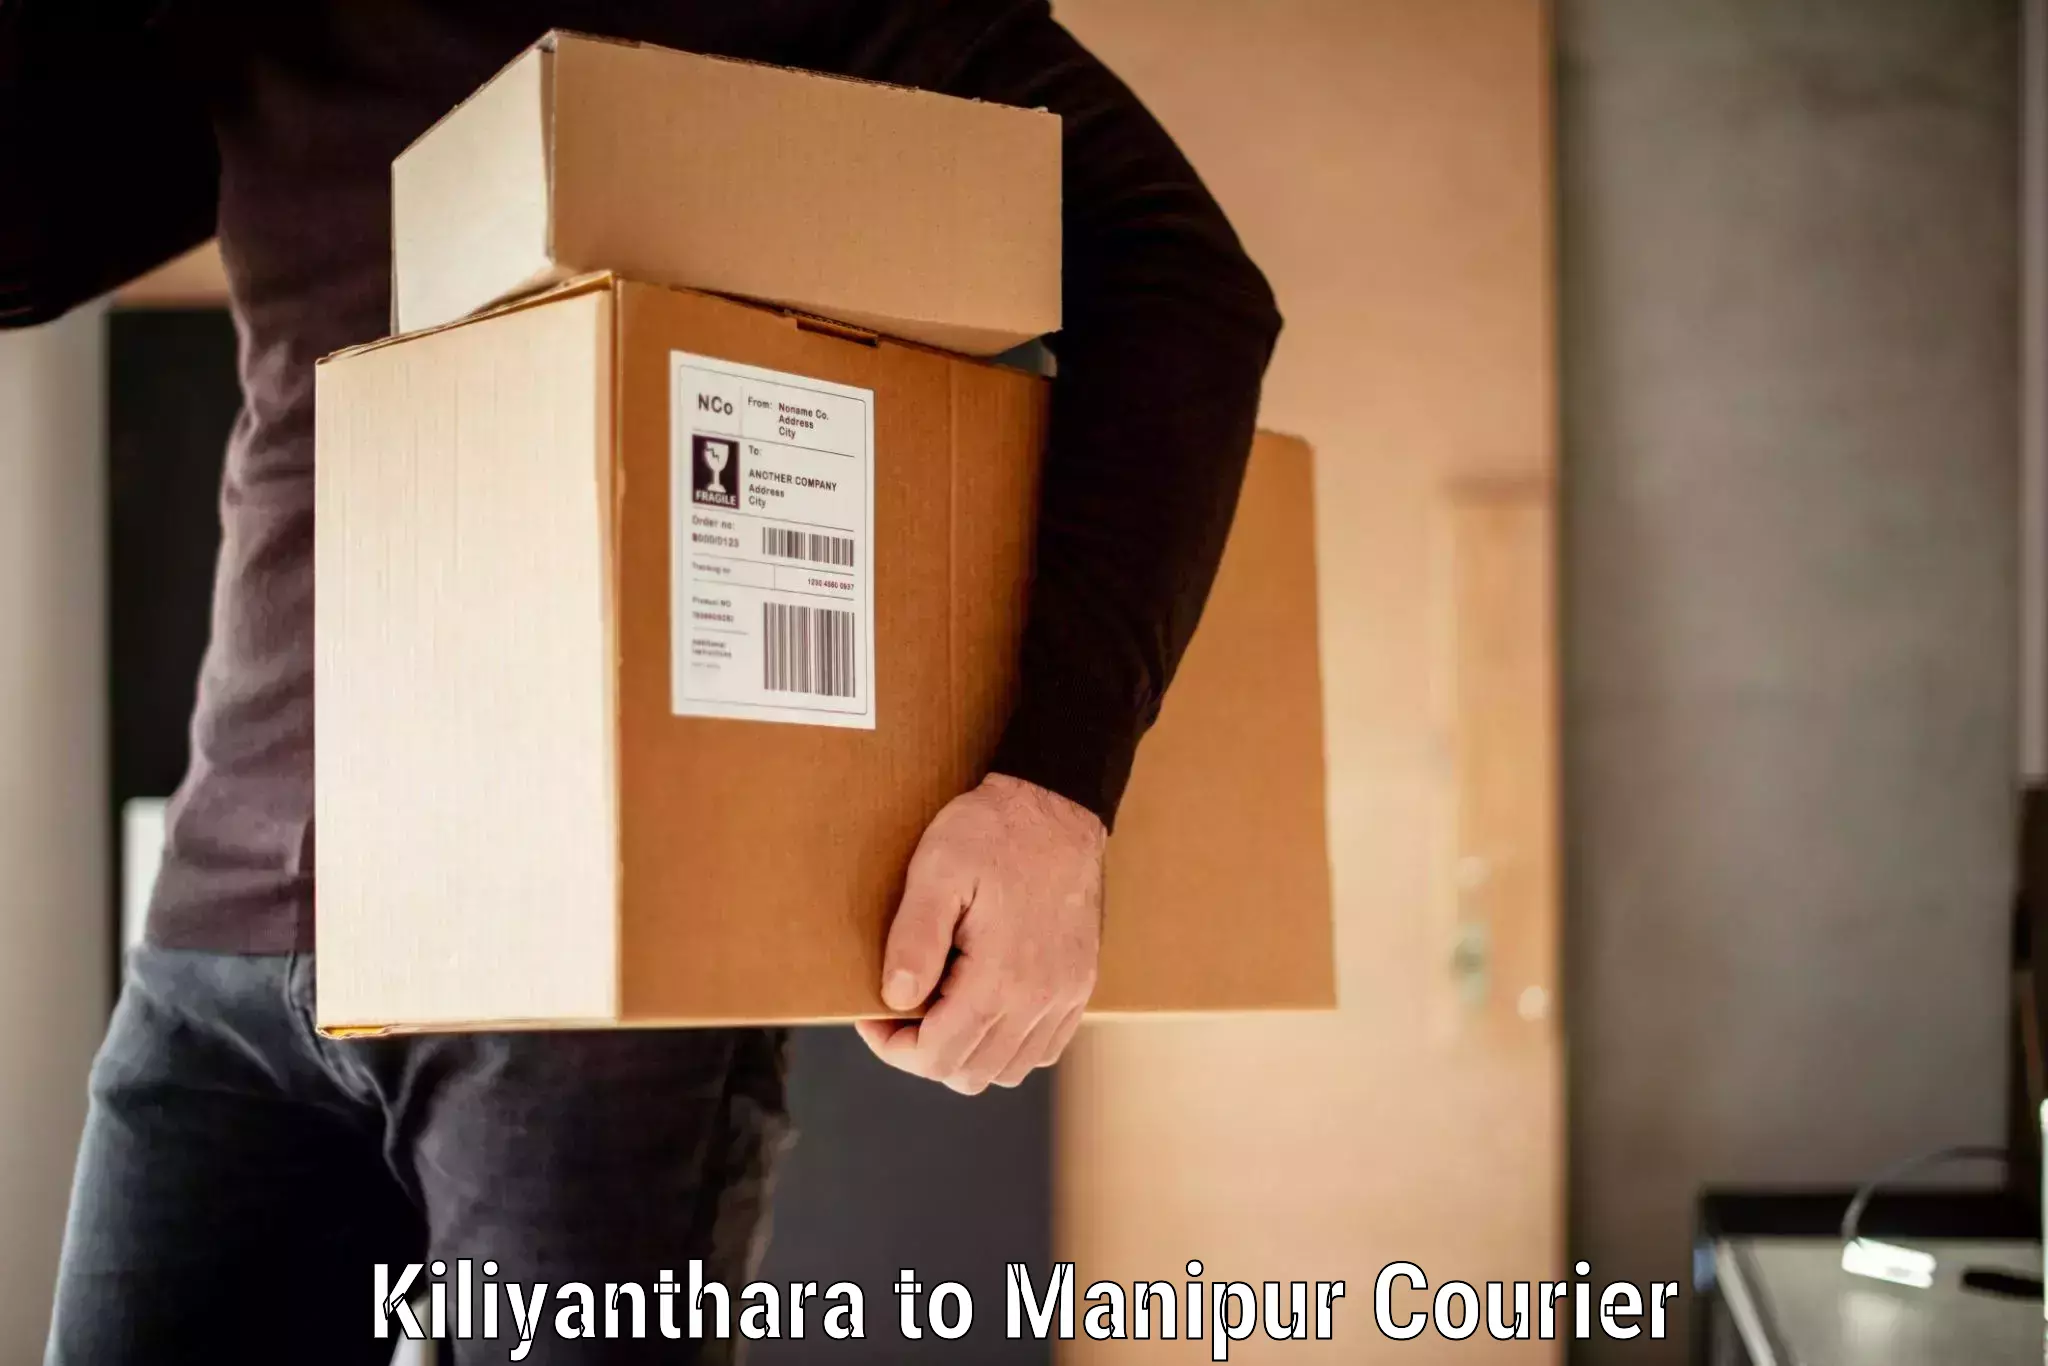 Baggage transport services Kiliyanthara to Manipur